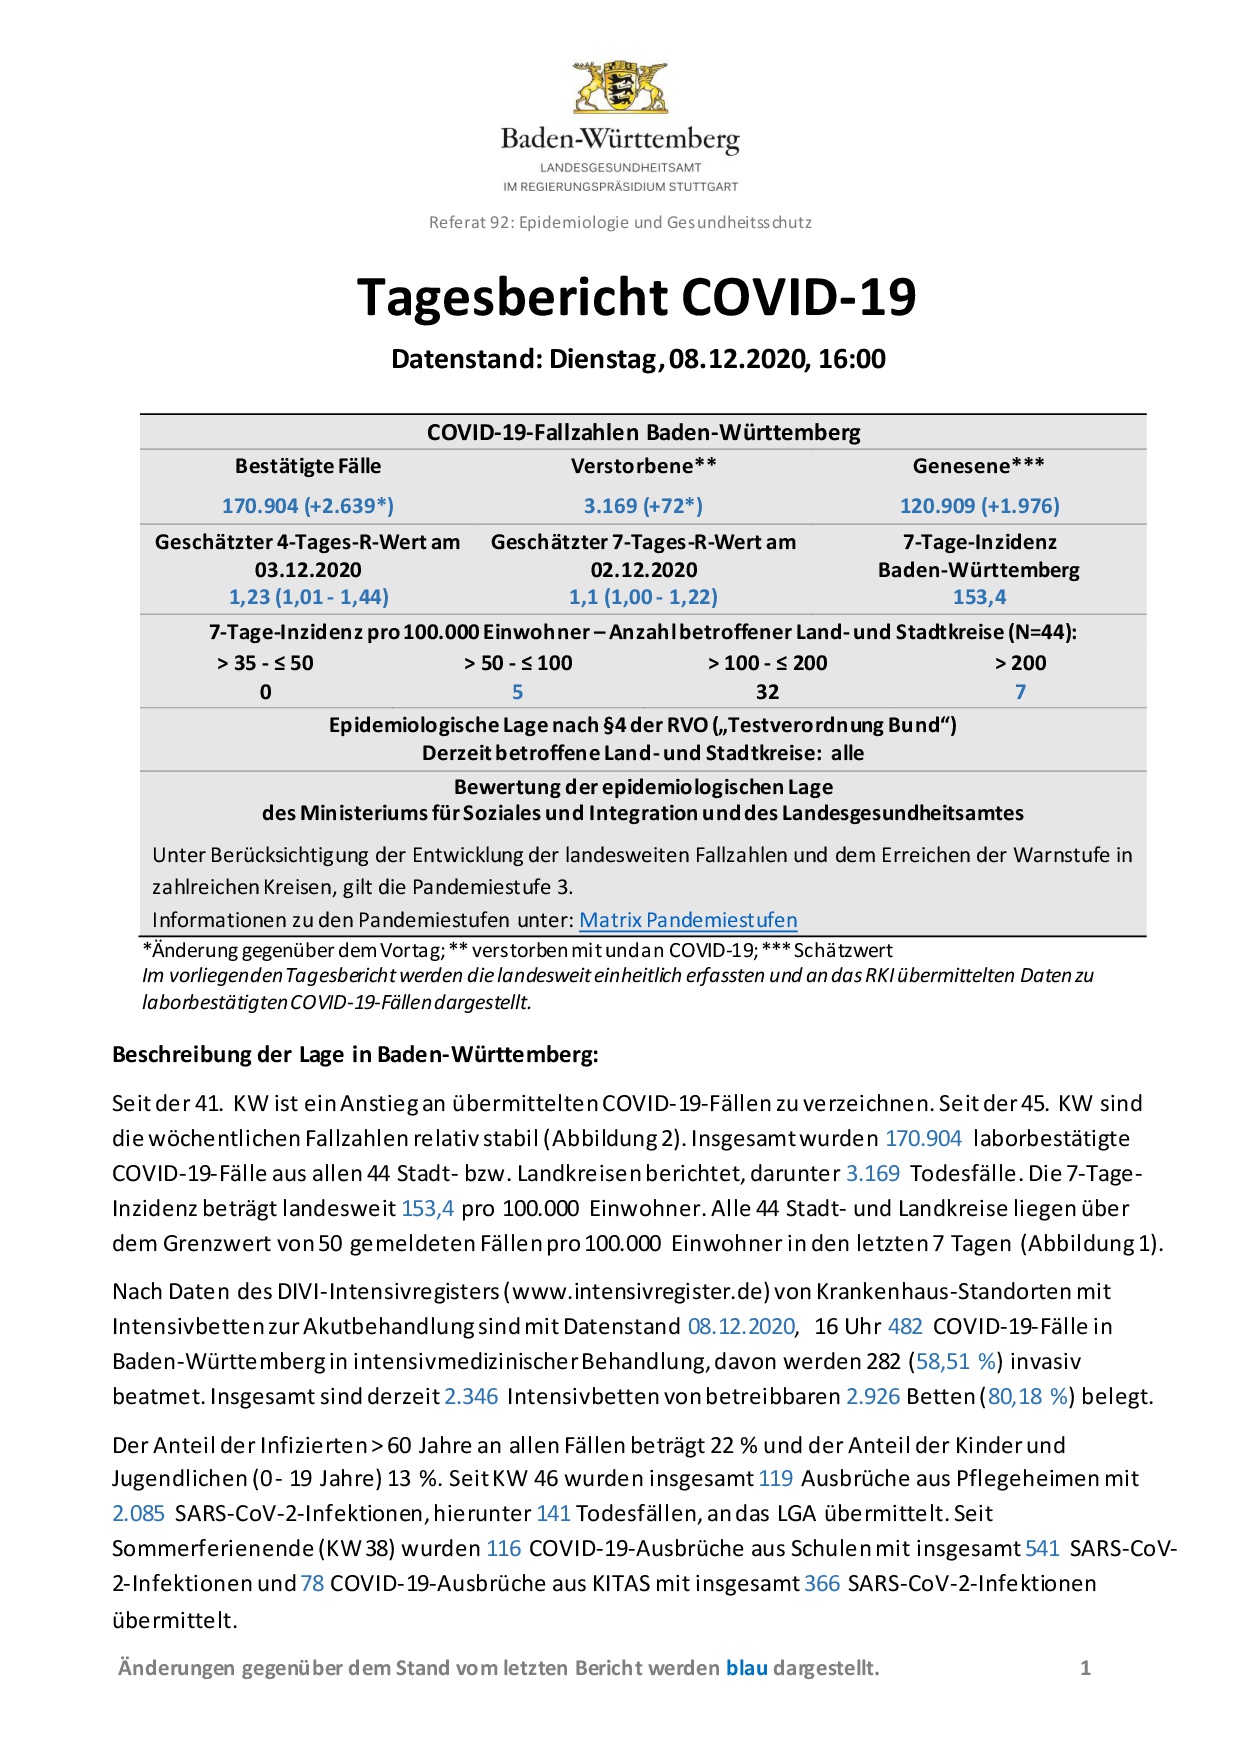 COVID-19 Tagesbericht (08.12.2020) des Landesgesundheitsamts Baden-Württemberg – (ausführlicher)